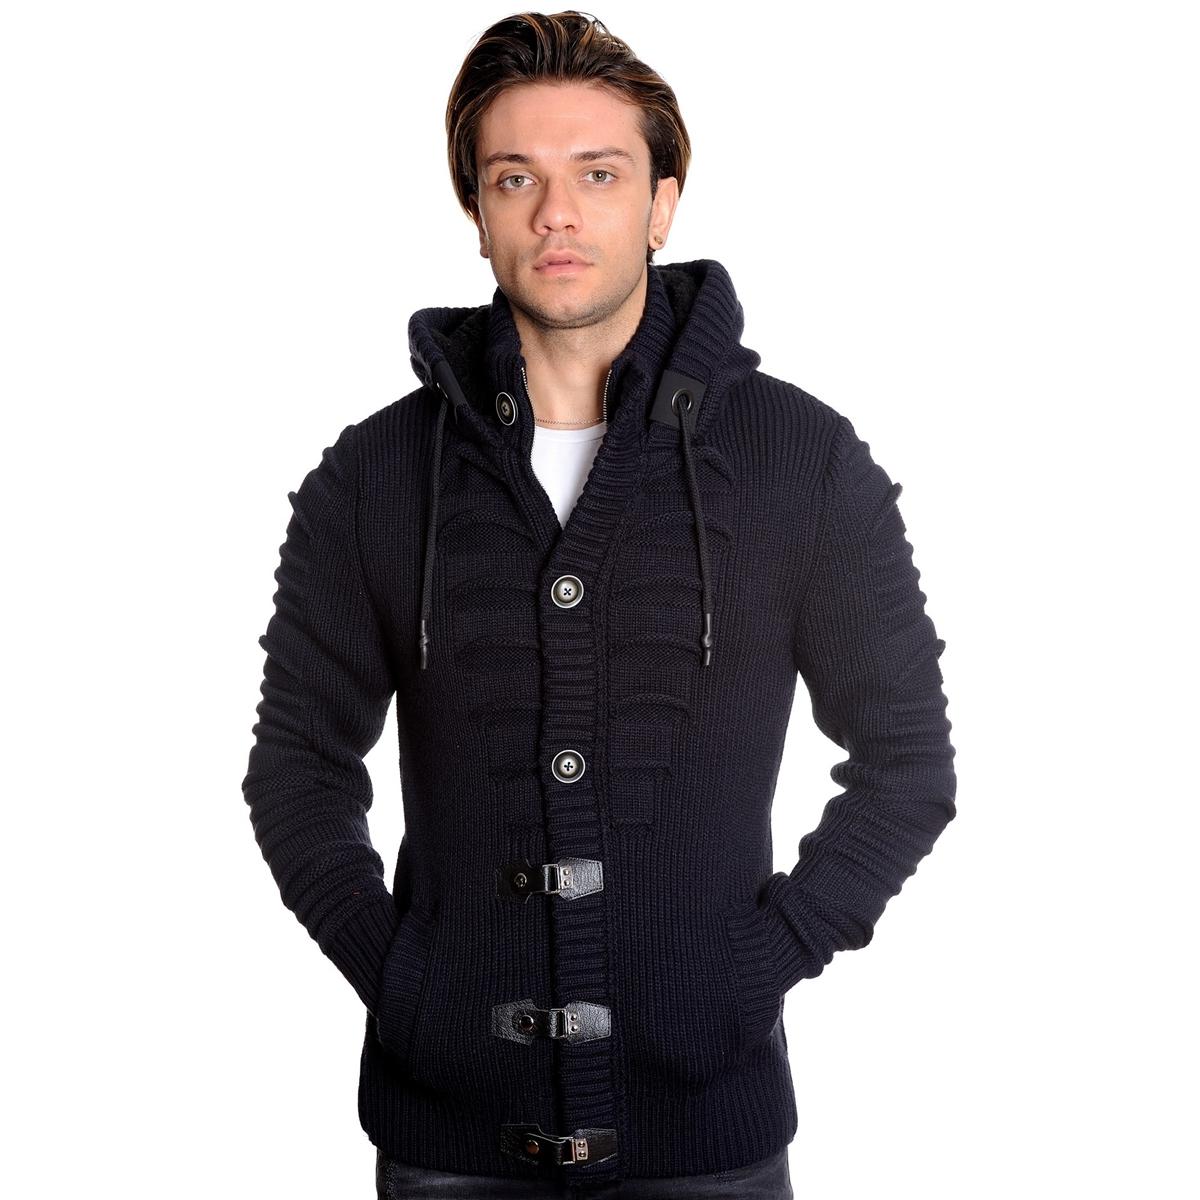 LCR 5607 Navy Blue Modern Fit Wool Cardigan Sweater | Upscale Menswear